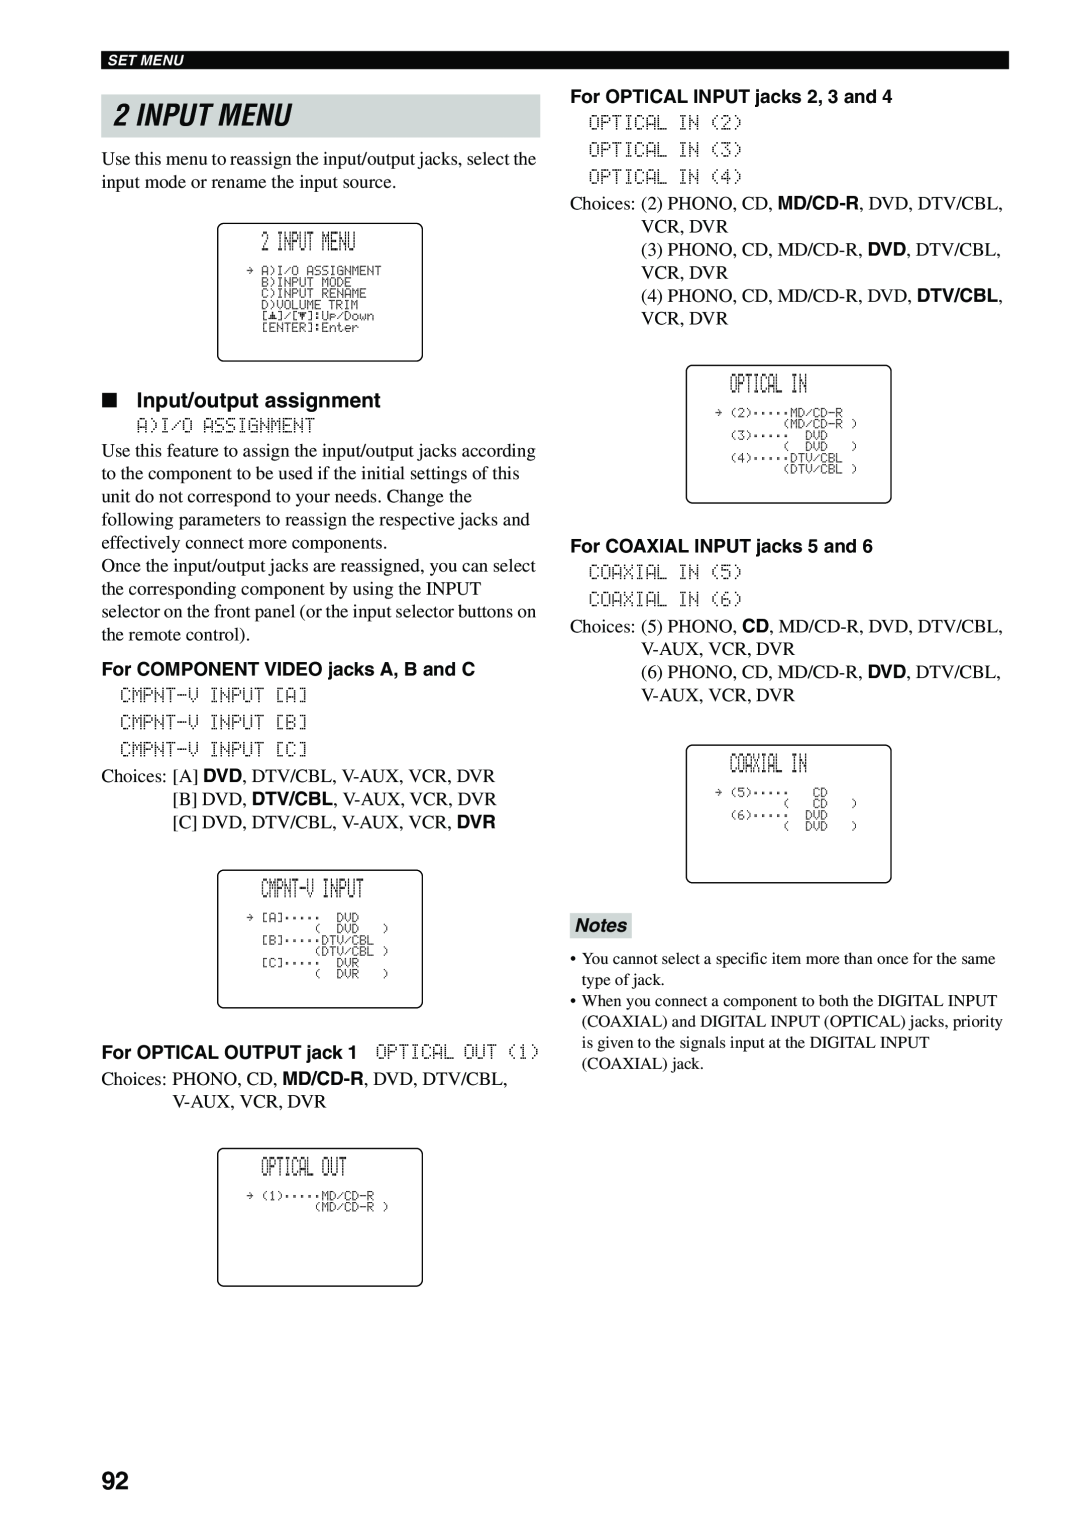 Yamaha HTR-5960 owner manual Input Menu, Cmpnt-Vinput, Optical Out, Optical In, Coaxial In, Input/output assignment, Notes 